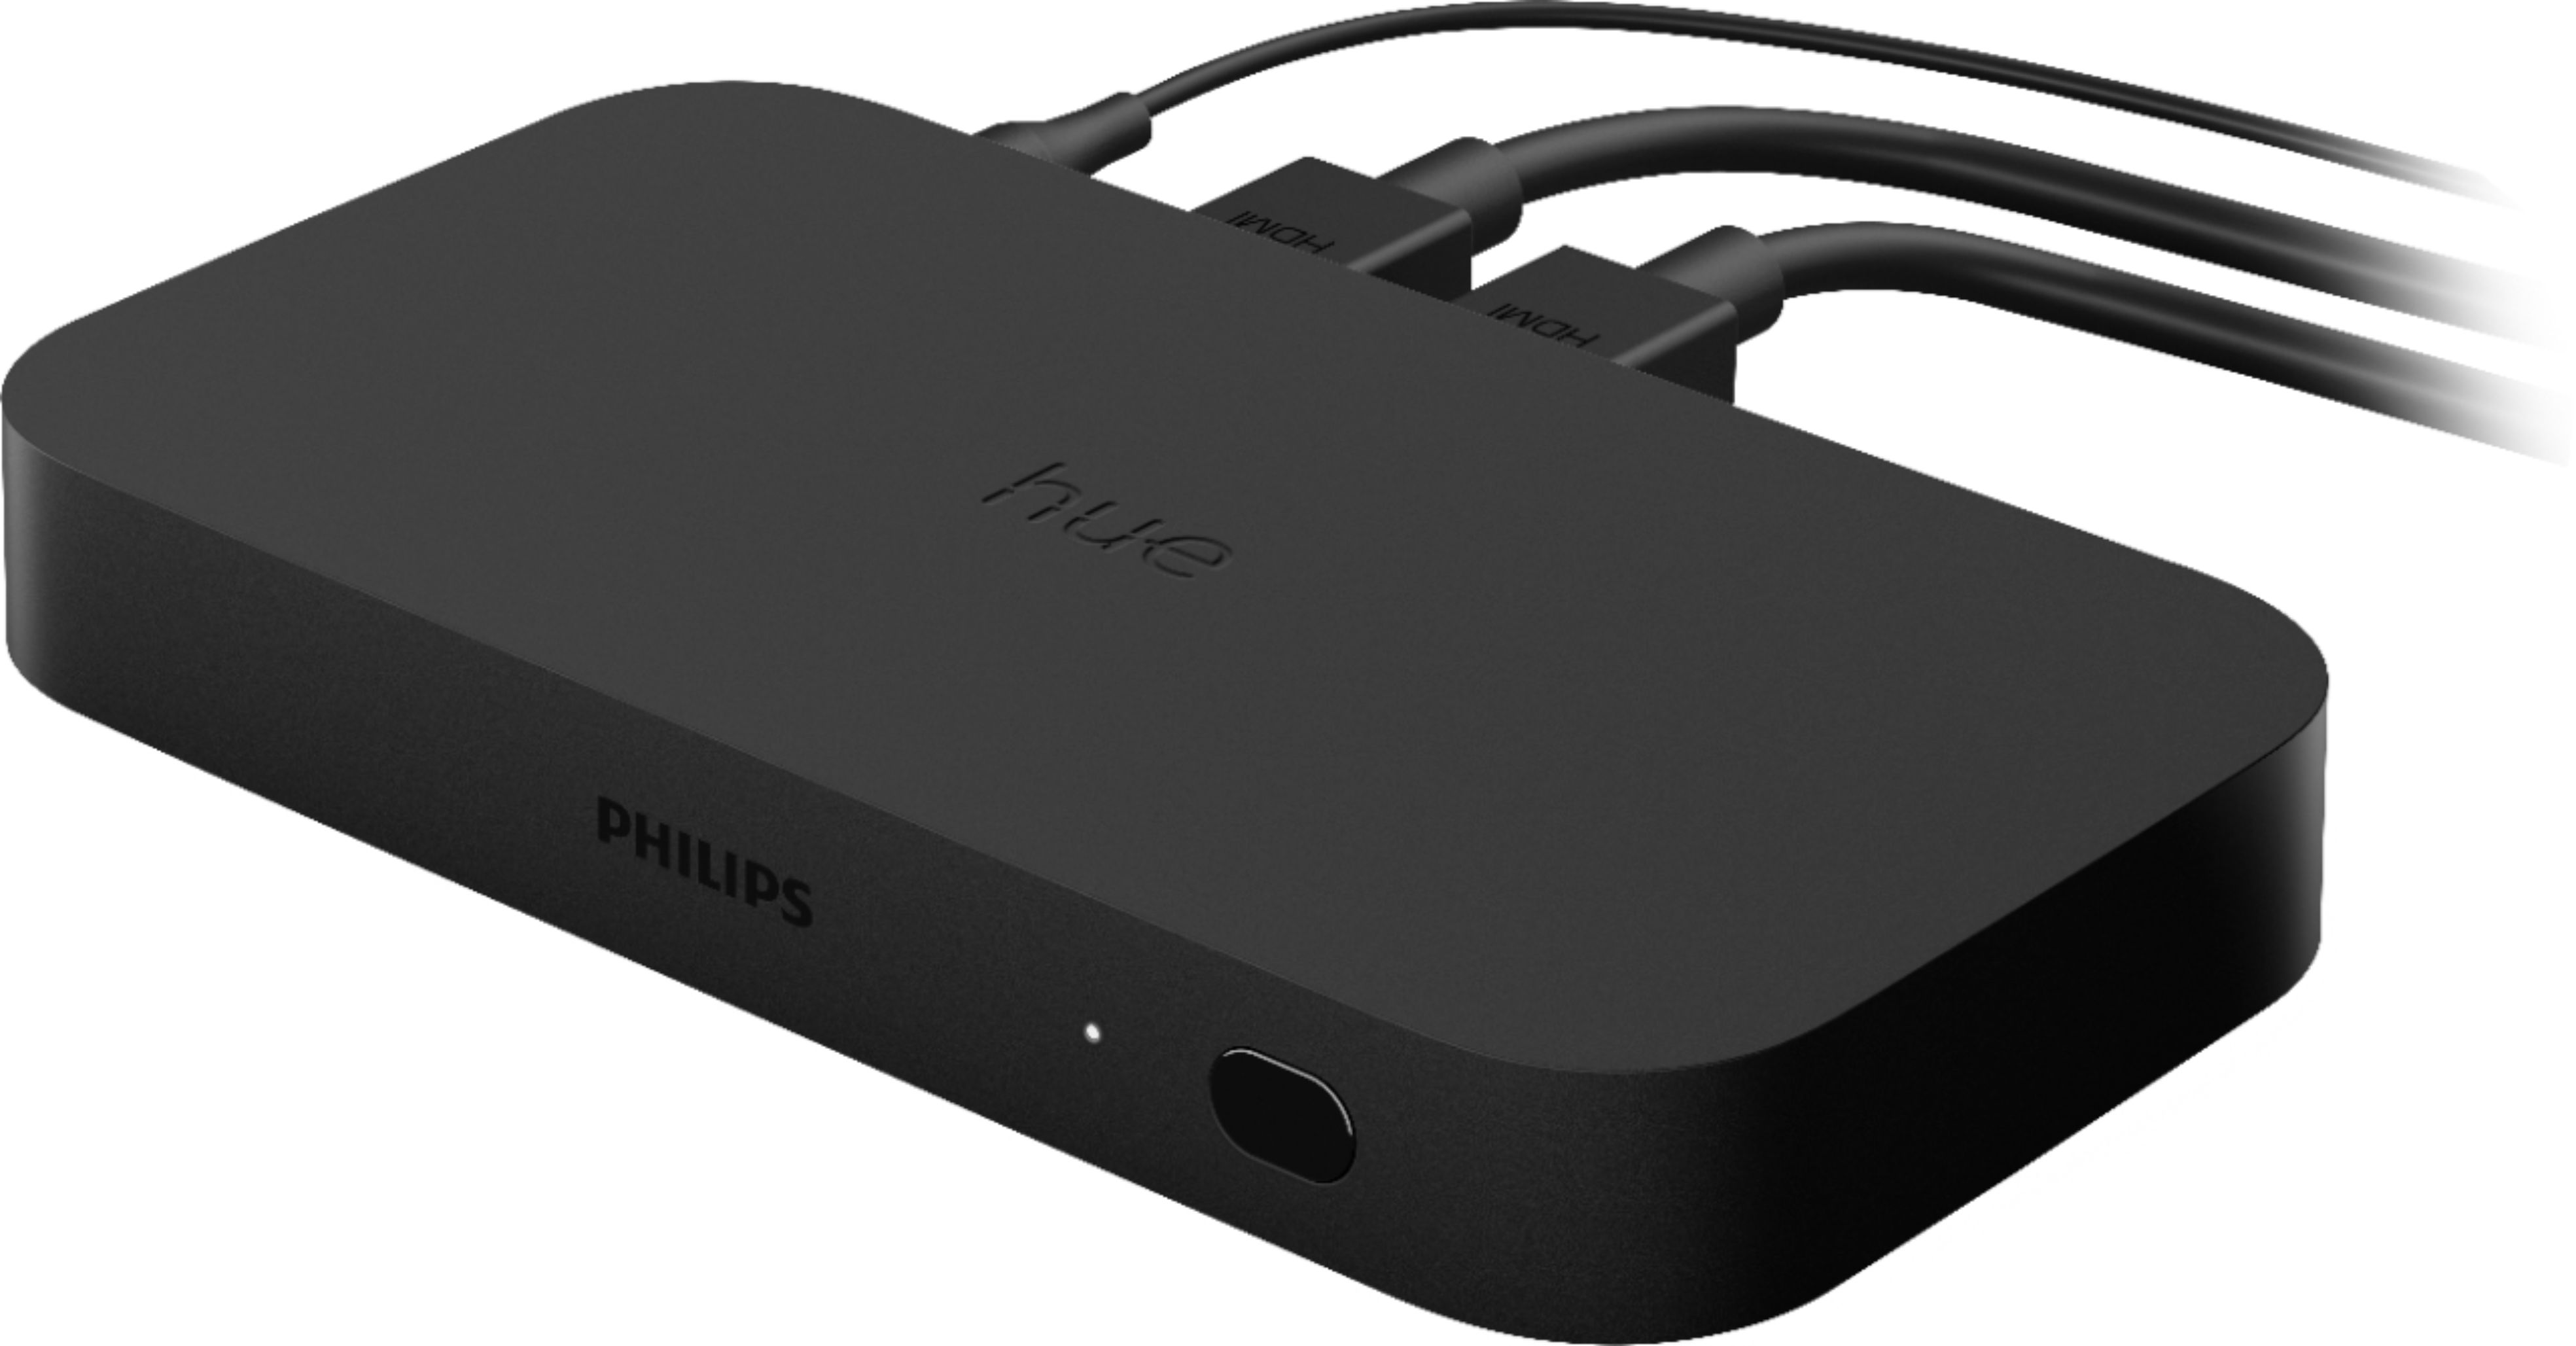 Philips Hue Play HDMI Sync Box + prise triple